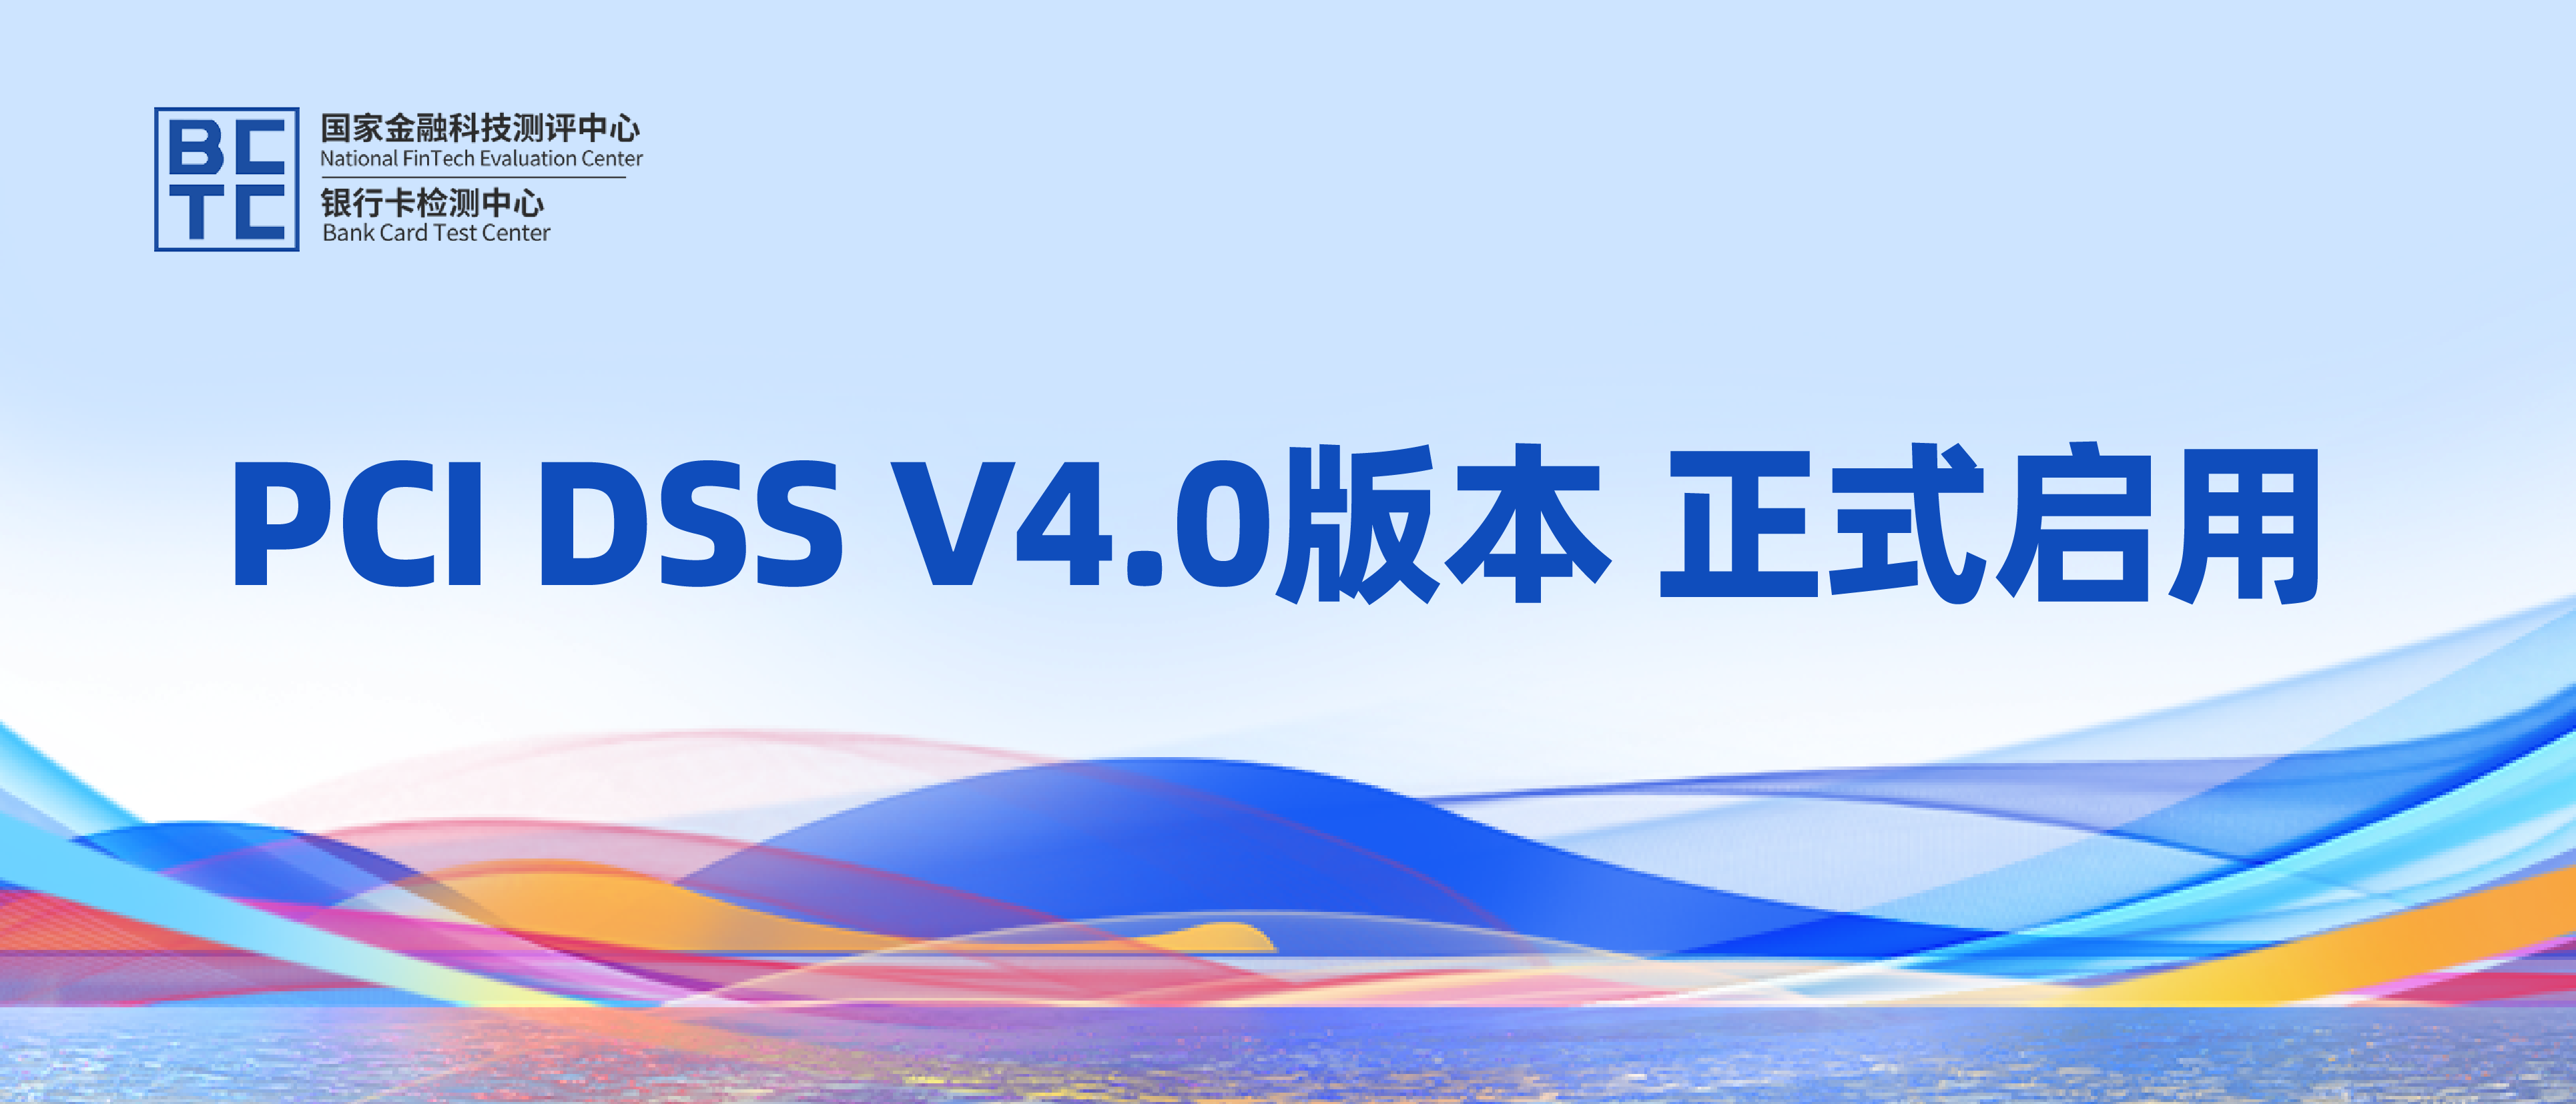 PCI DSS V4.0版本正式启用